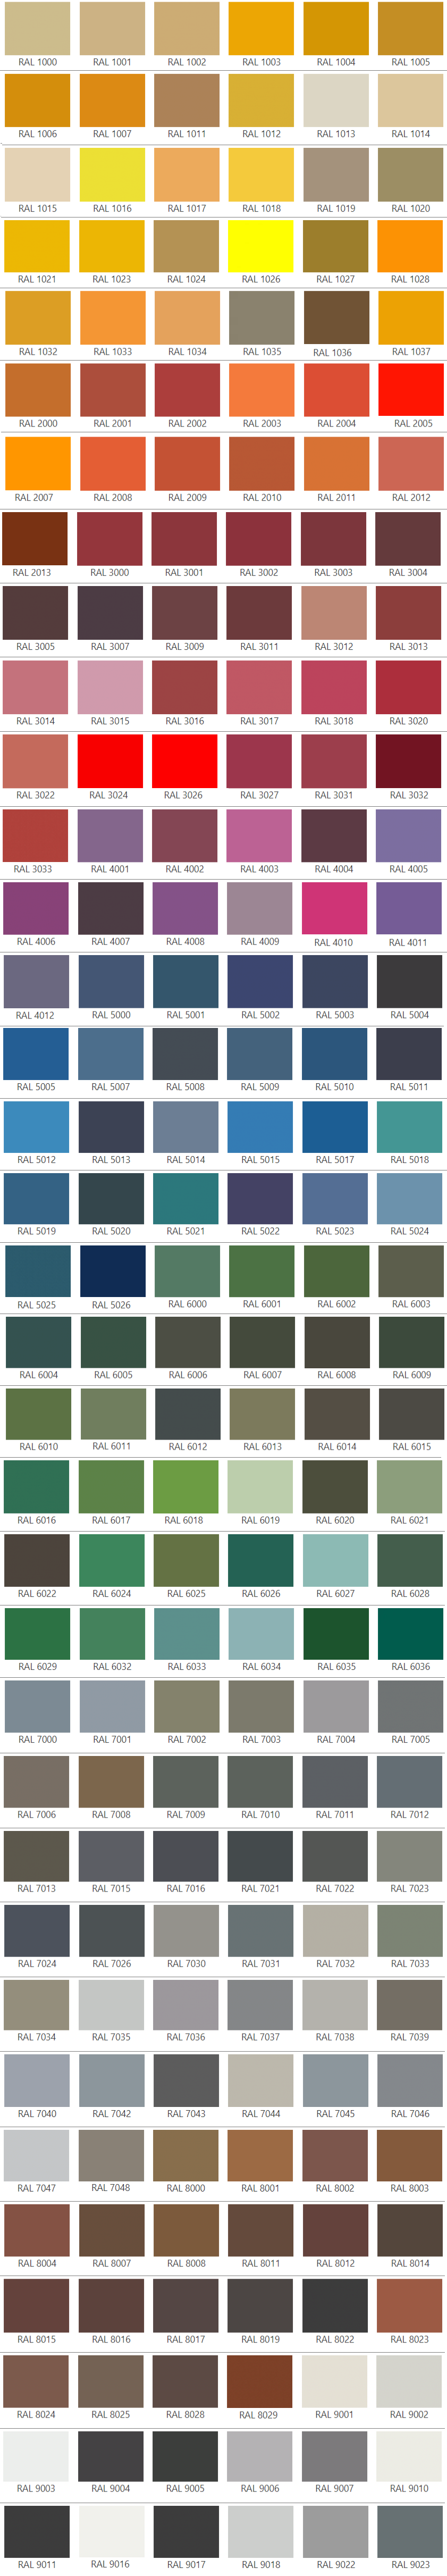 Таблица цветов RAL для колеровки краски